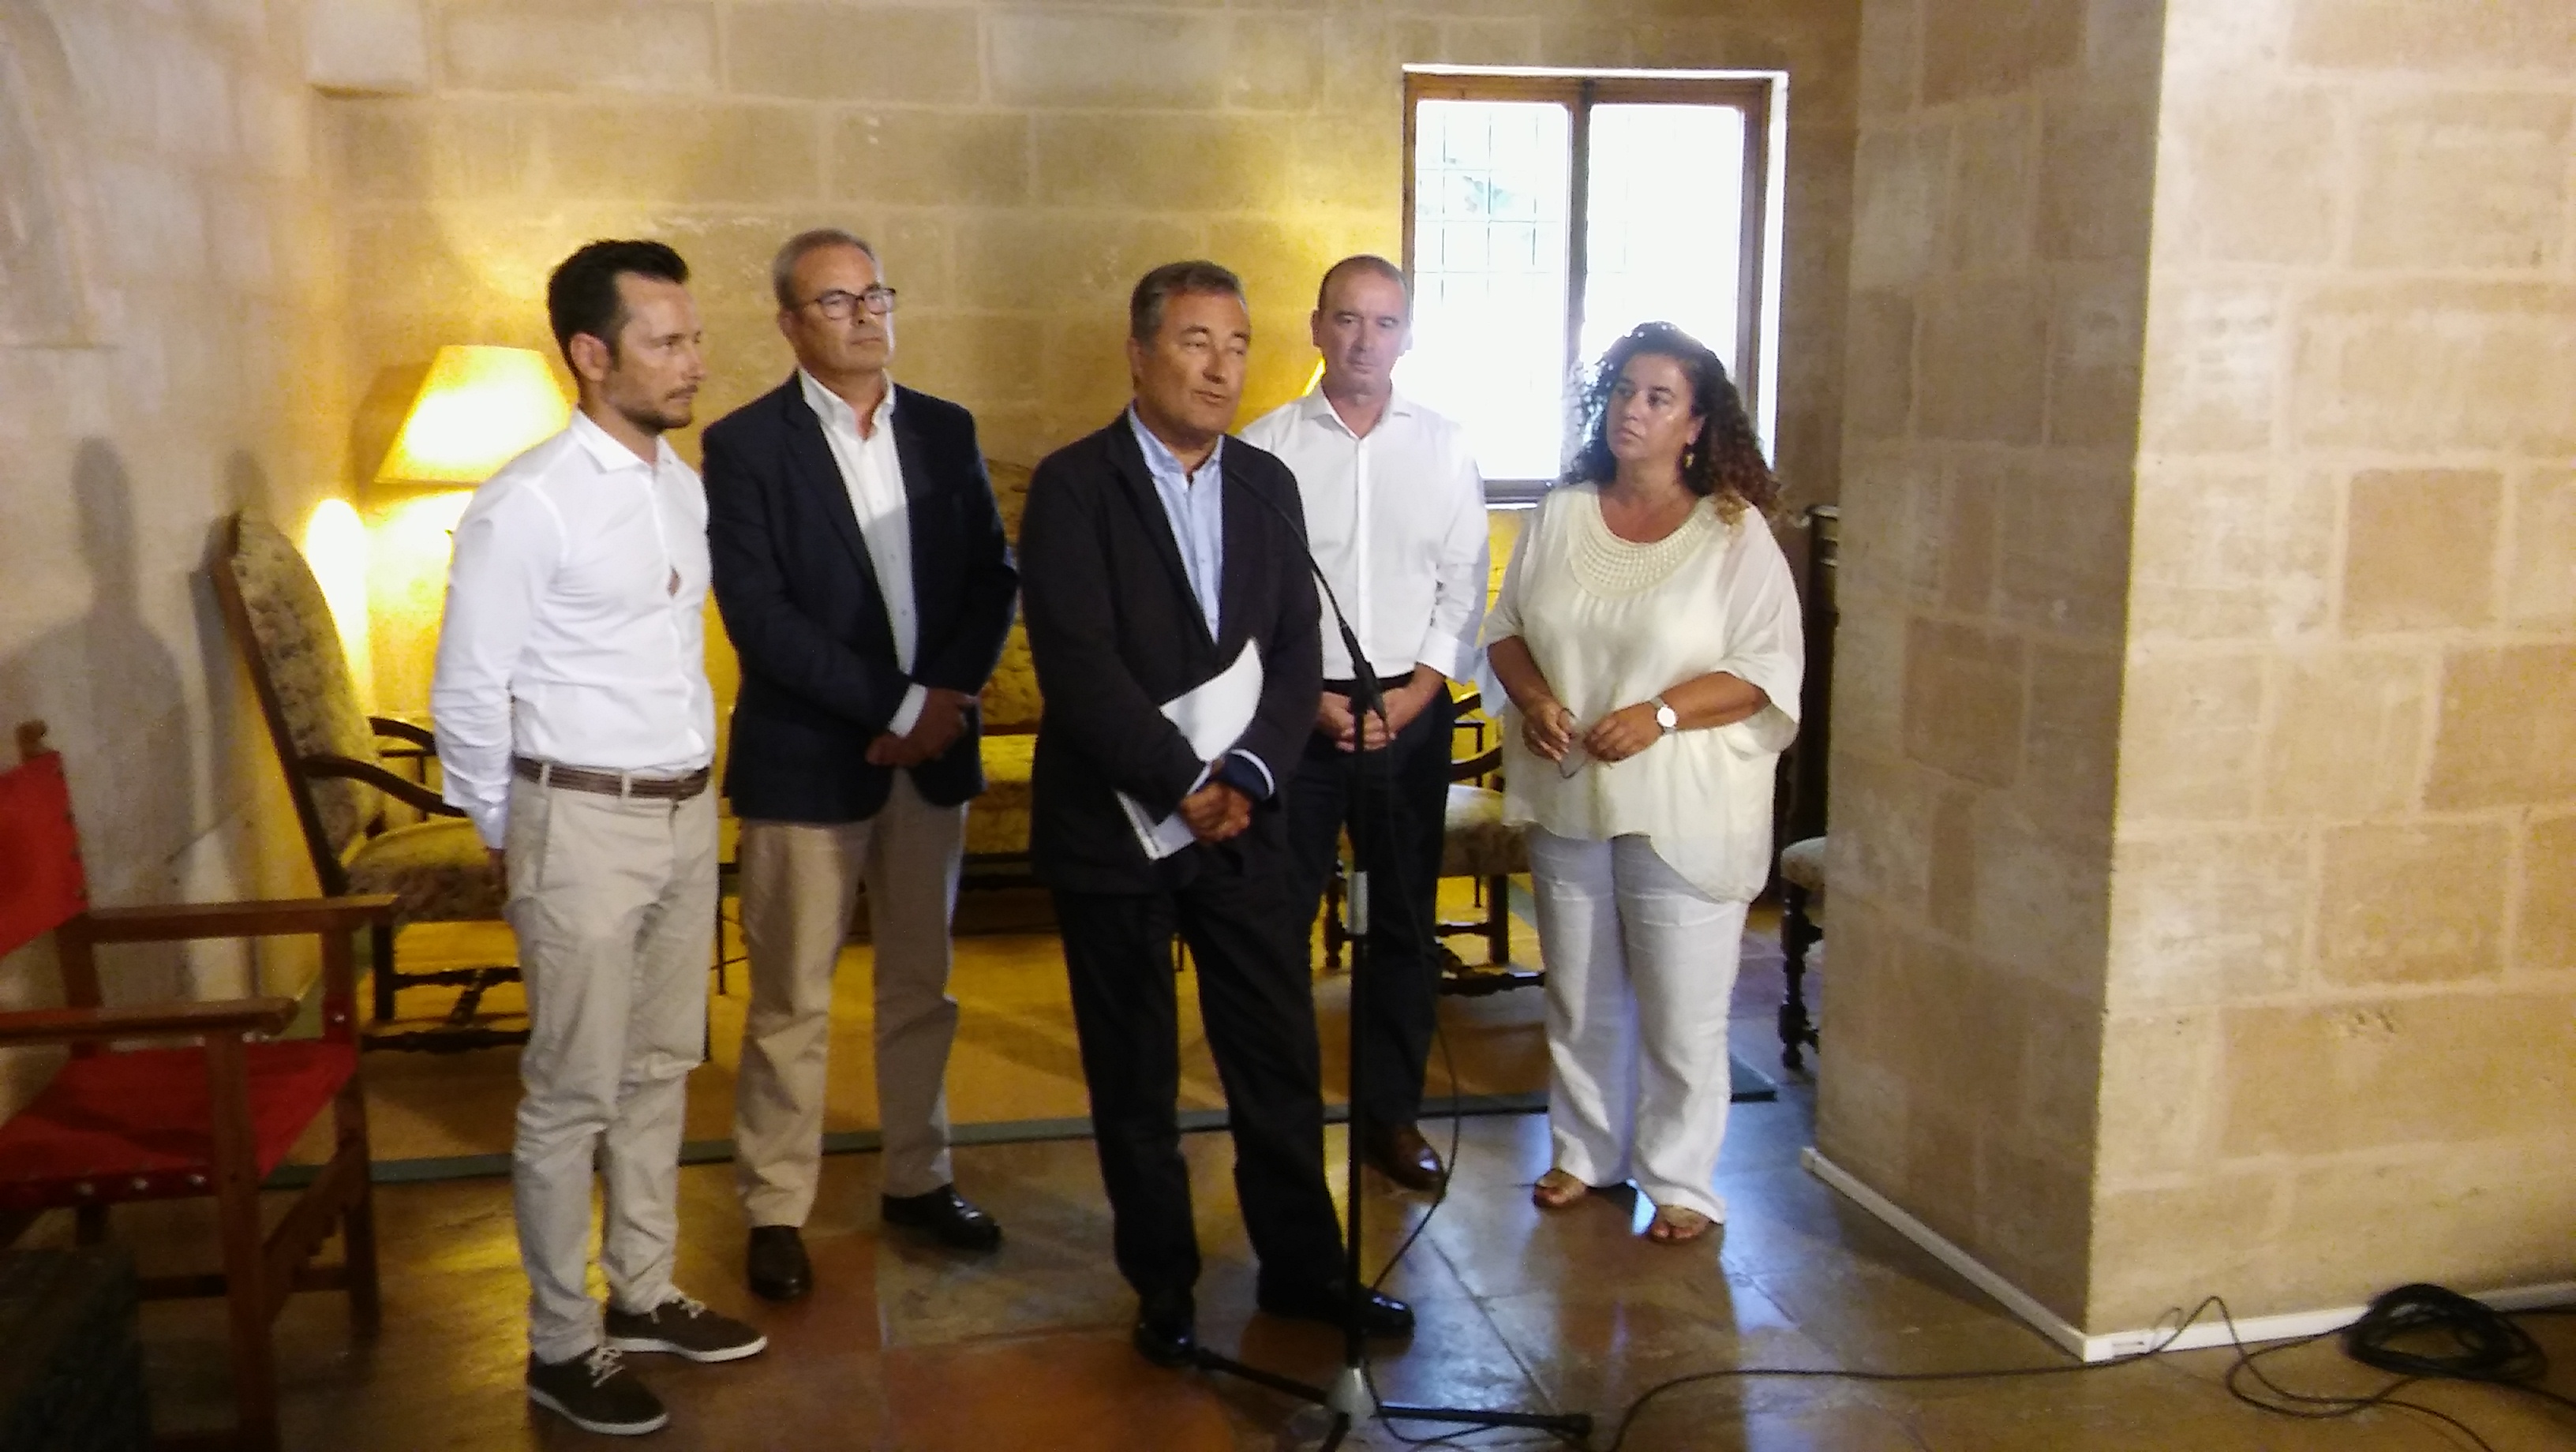 Acord entre totes les administracions sobre la ubicació de la nova estació marítima de Formentera en el port d’Eivissa